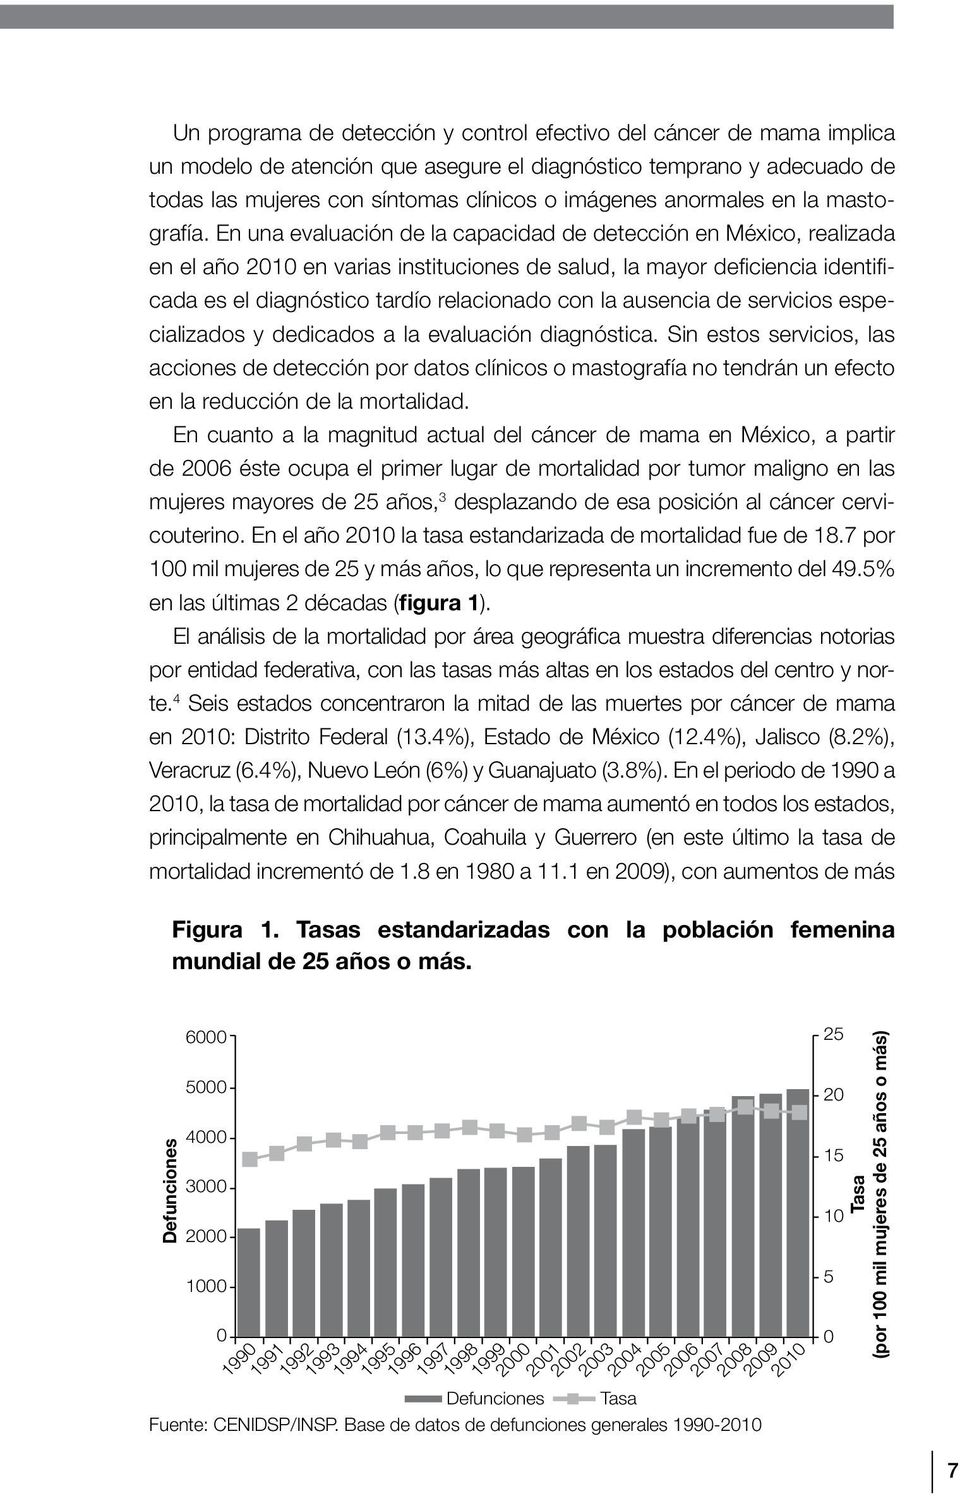 En una evaluación de la capacidad de detección en México, realizada en el año 2010 en varias instituciones de salud, la mayor deficiencia identificada es el diagnóstico tardío relacionado con la